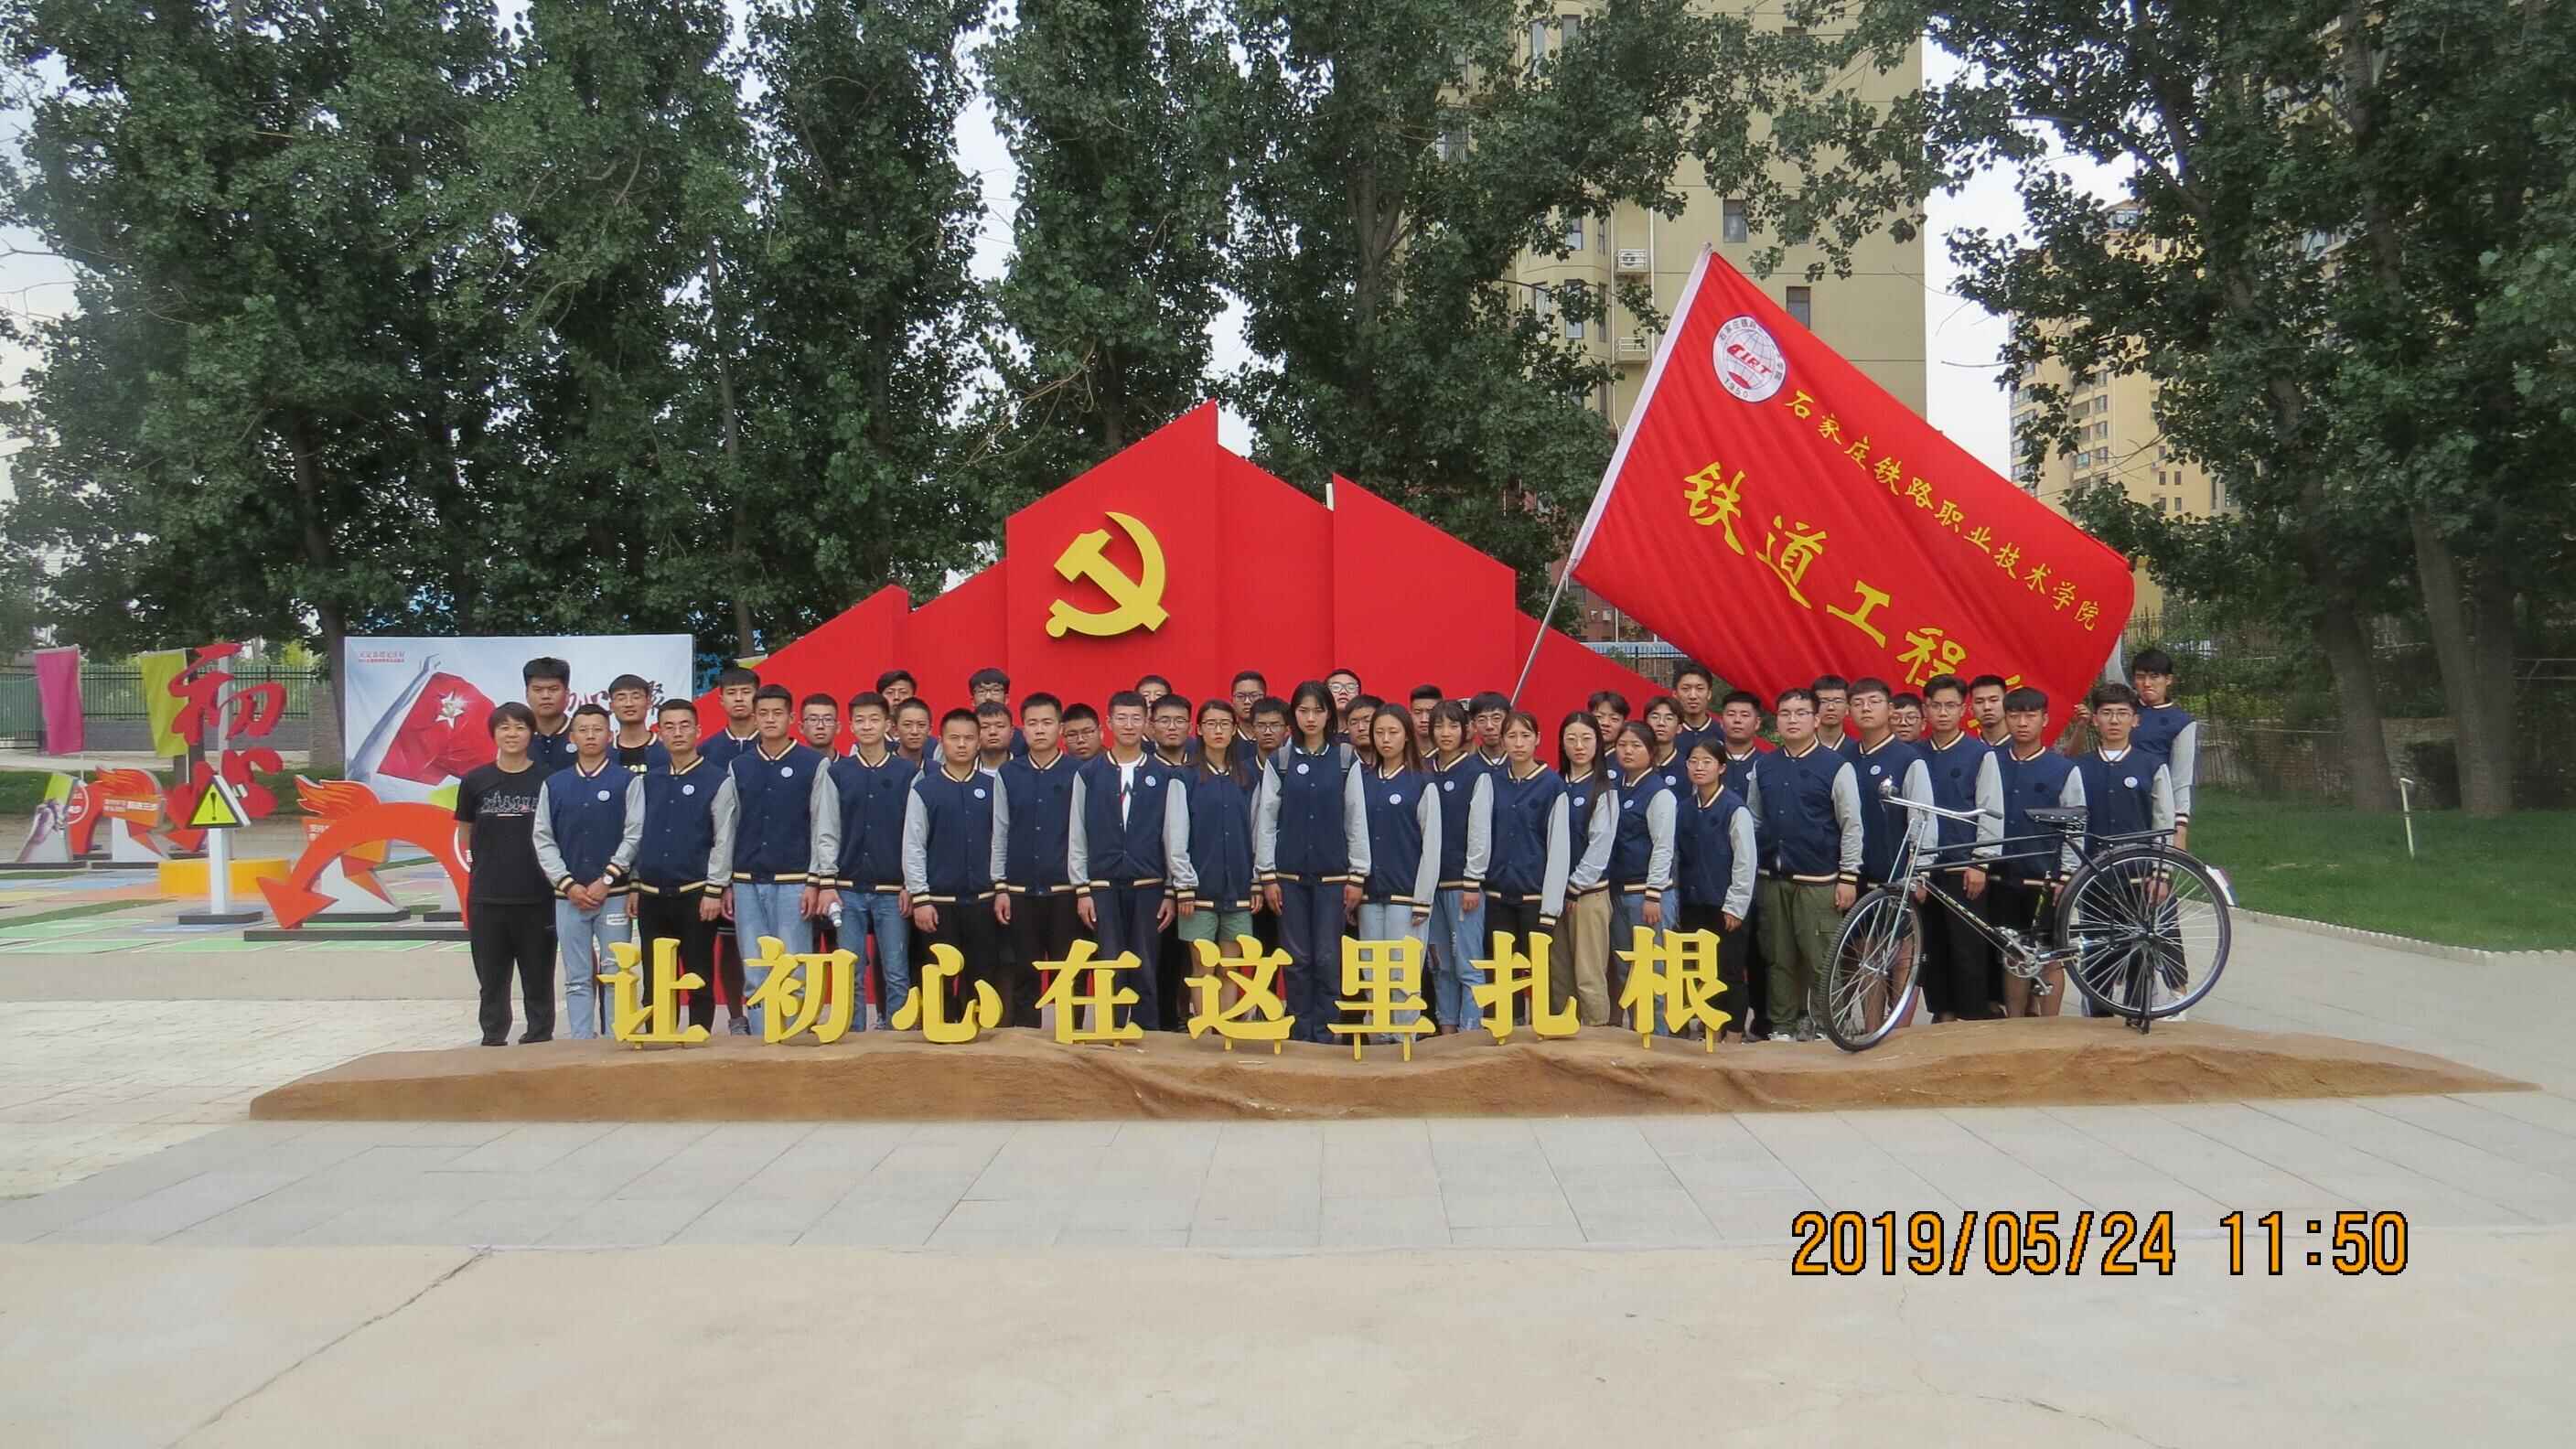 铁道工程系开展党员培训实践课程——正定塔元庄社会